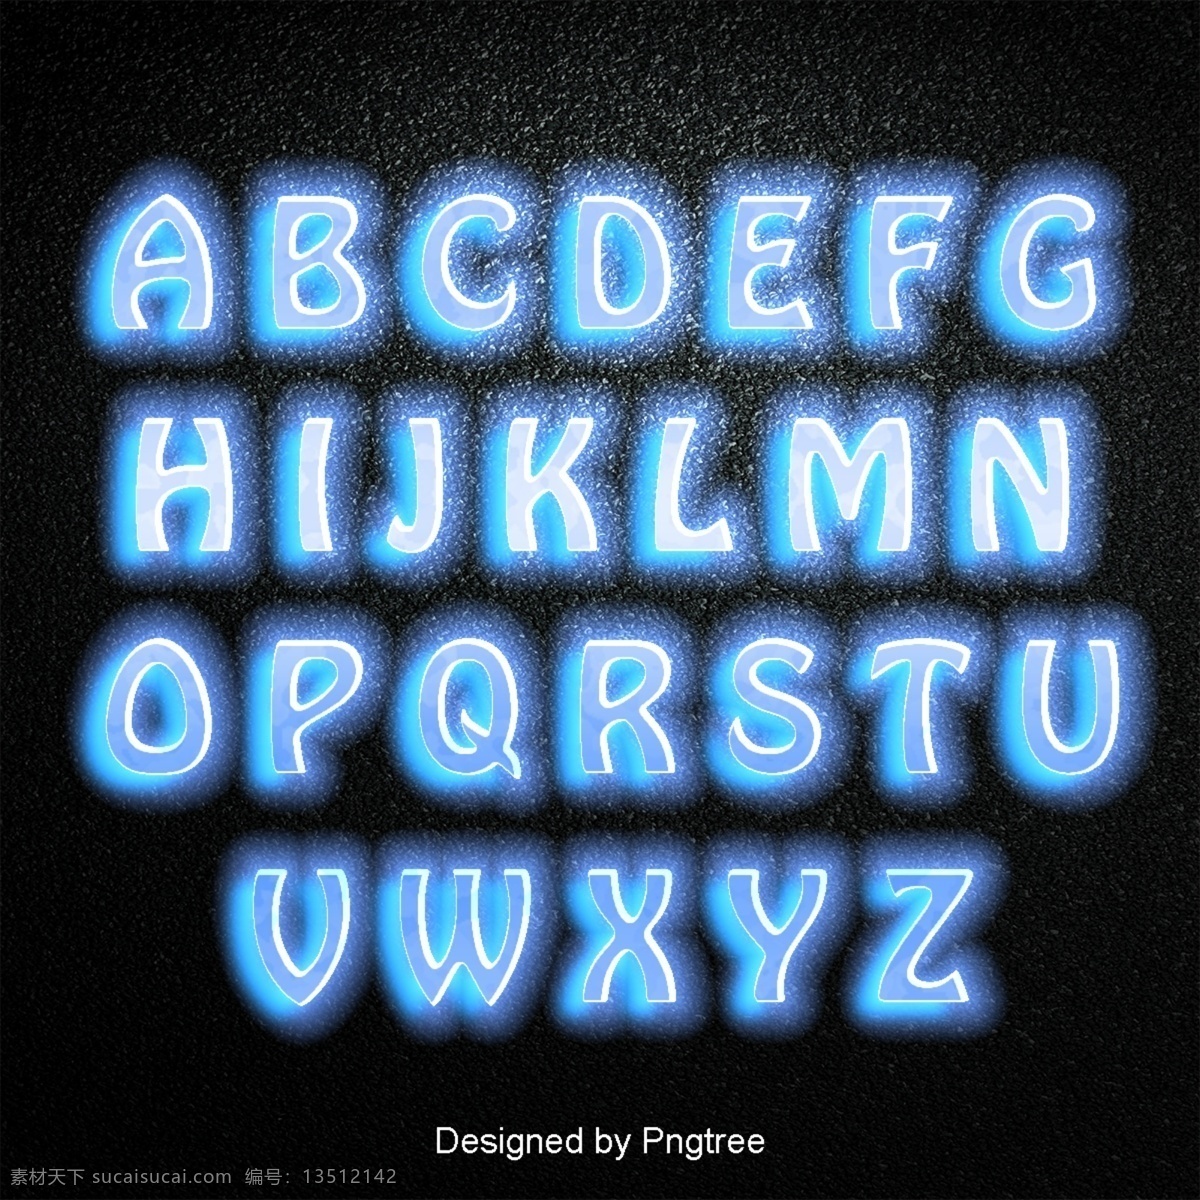 二 十 四 英文 字母 设置 字体 书法 海报 渐变 霓虹 3d 可爱 效果 三维 蓝色 金属 火焰